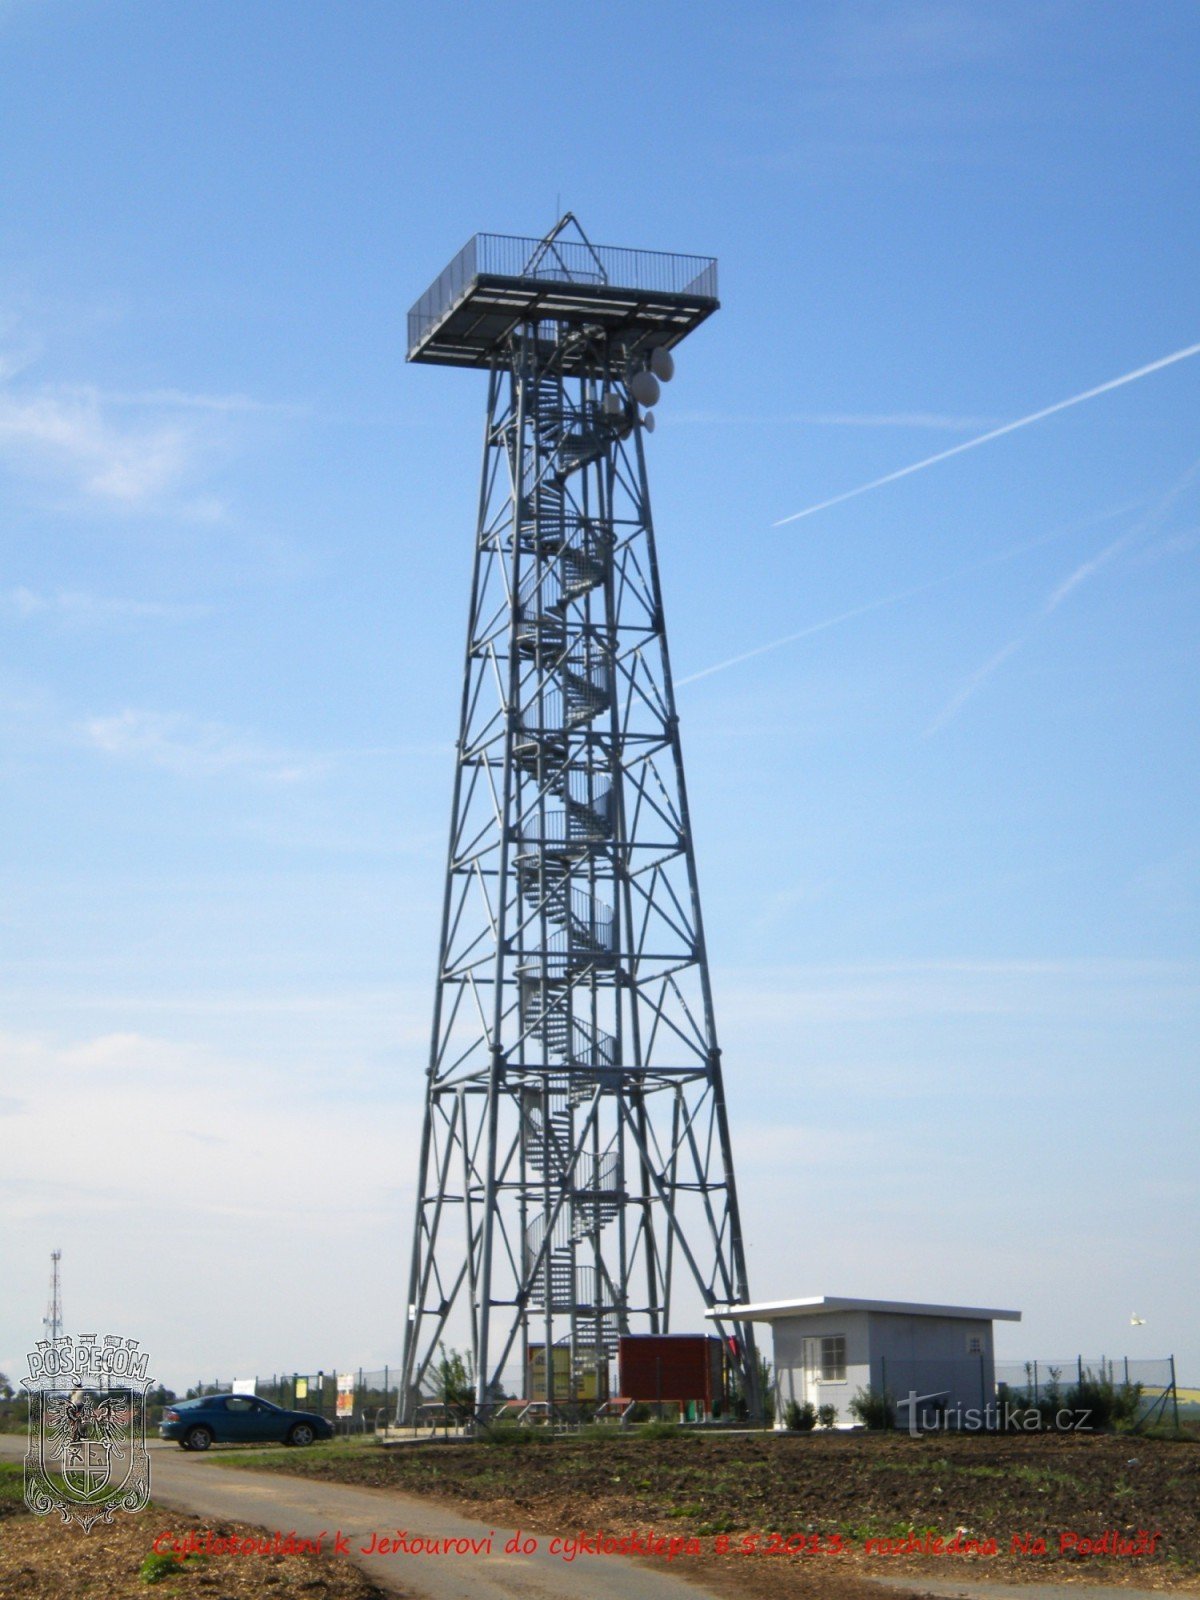 Torre de observação Na Podluží.